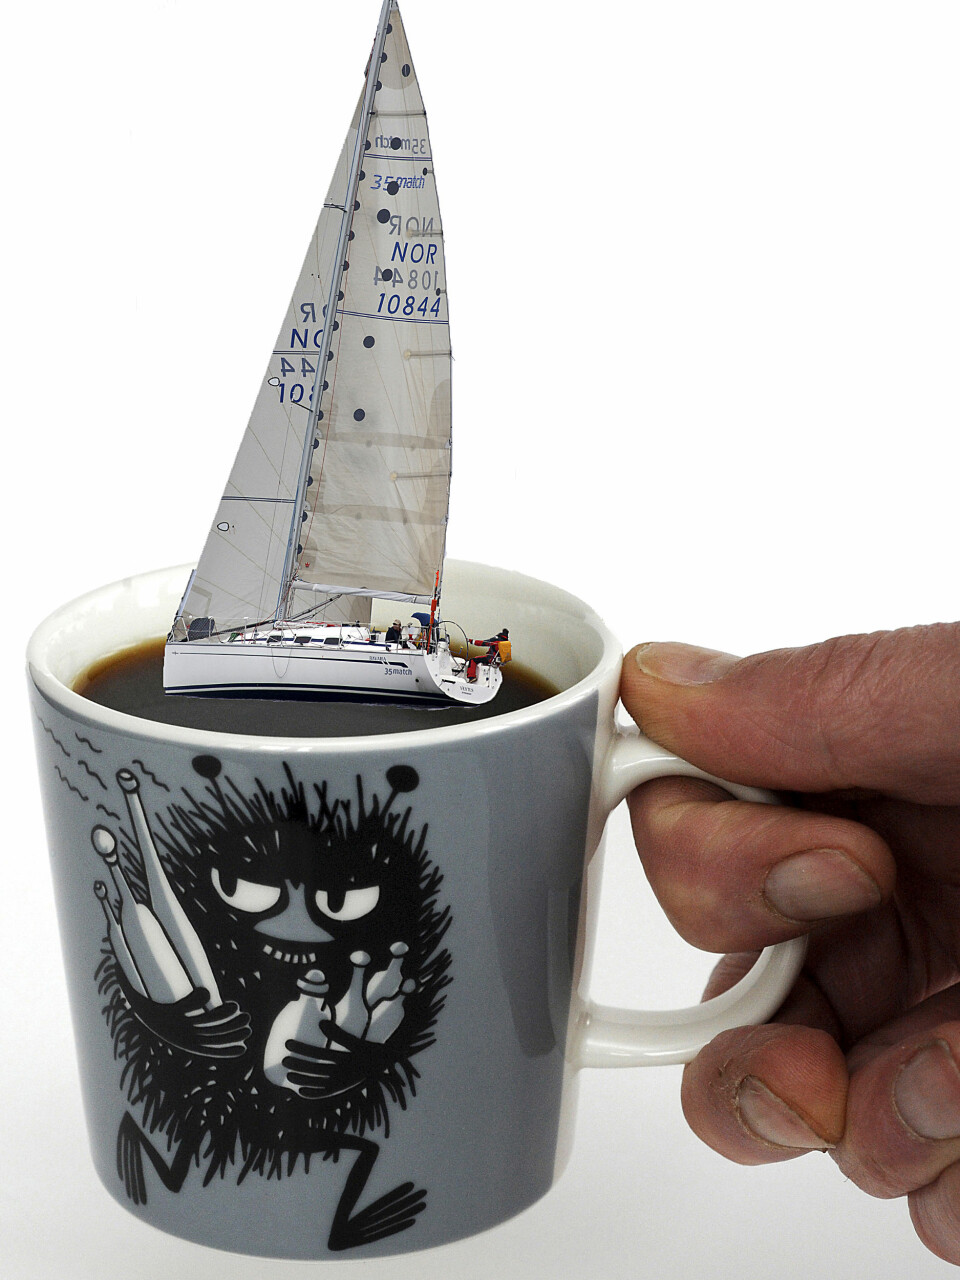 BÅTKAFFE: Kaffe er like viktig som vind i seilene for mange når de er på seiltur. Vi setter pris på en god kopp båtkaffe.